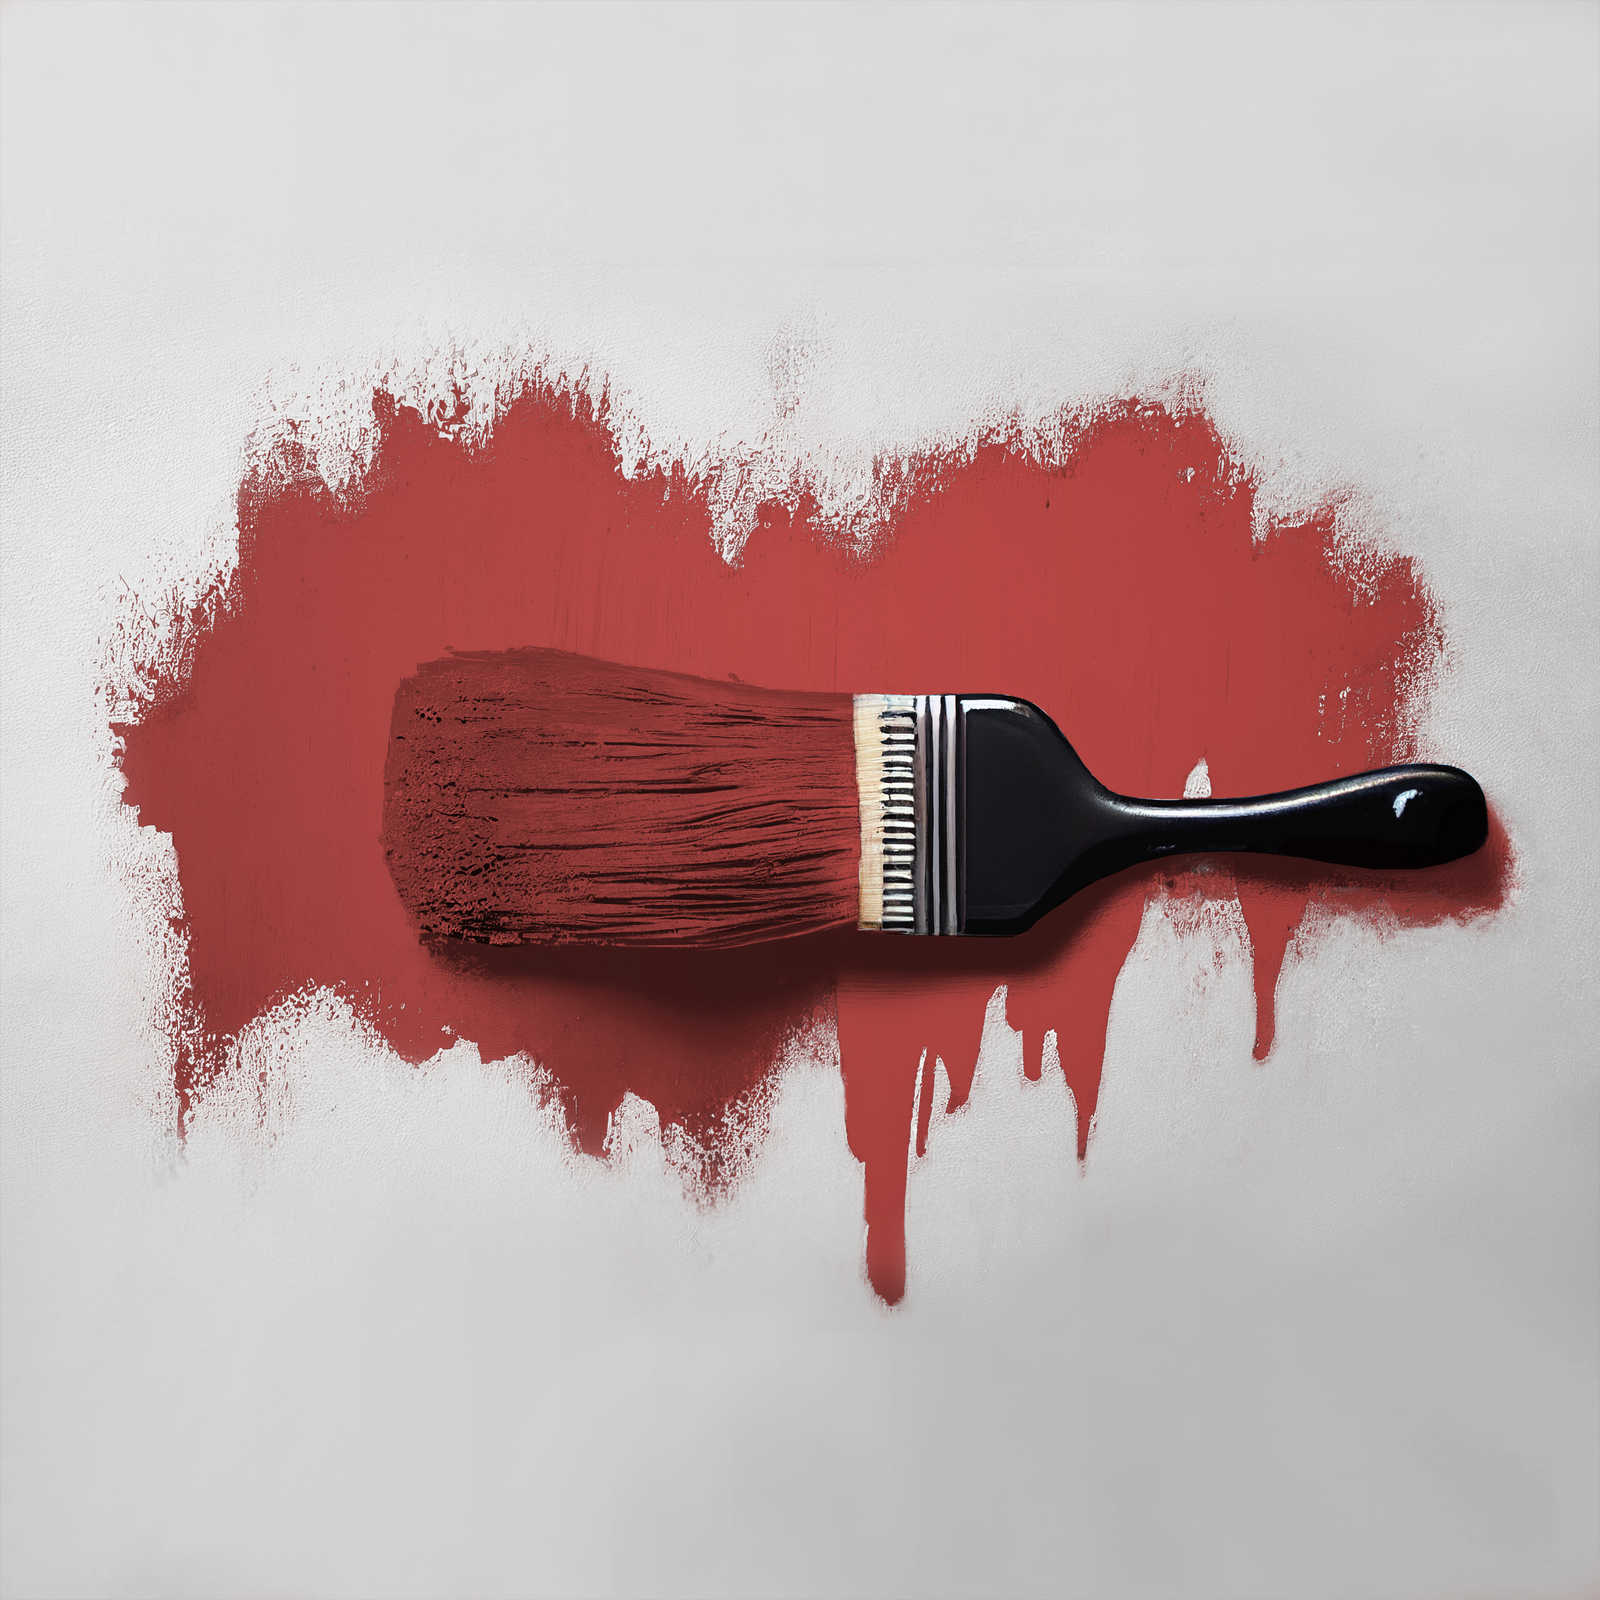             Pittura murale TCK7005 »Cheeky Chilli« in rosso fuoco forte – 5,0 litri
        